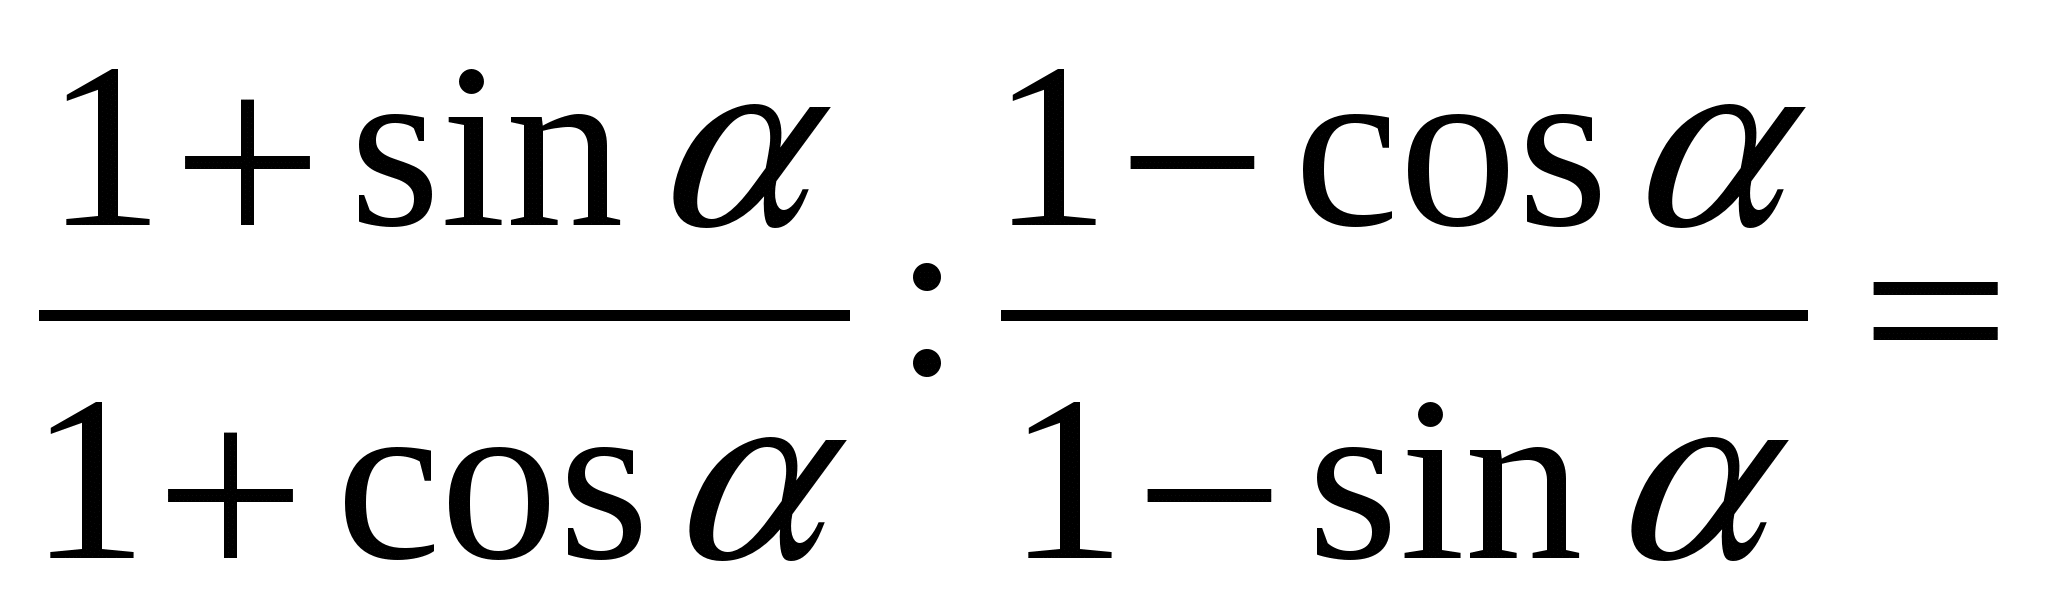 9 сыныпқа арналған Тригонометриялық өрнектерді теңбе-тең түрлендіру алгебрадан сабақ жоспары